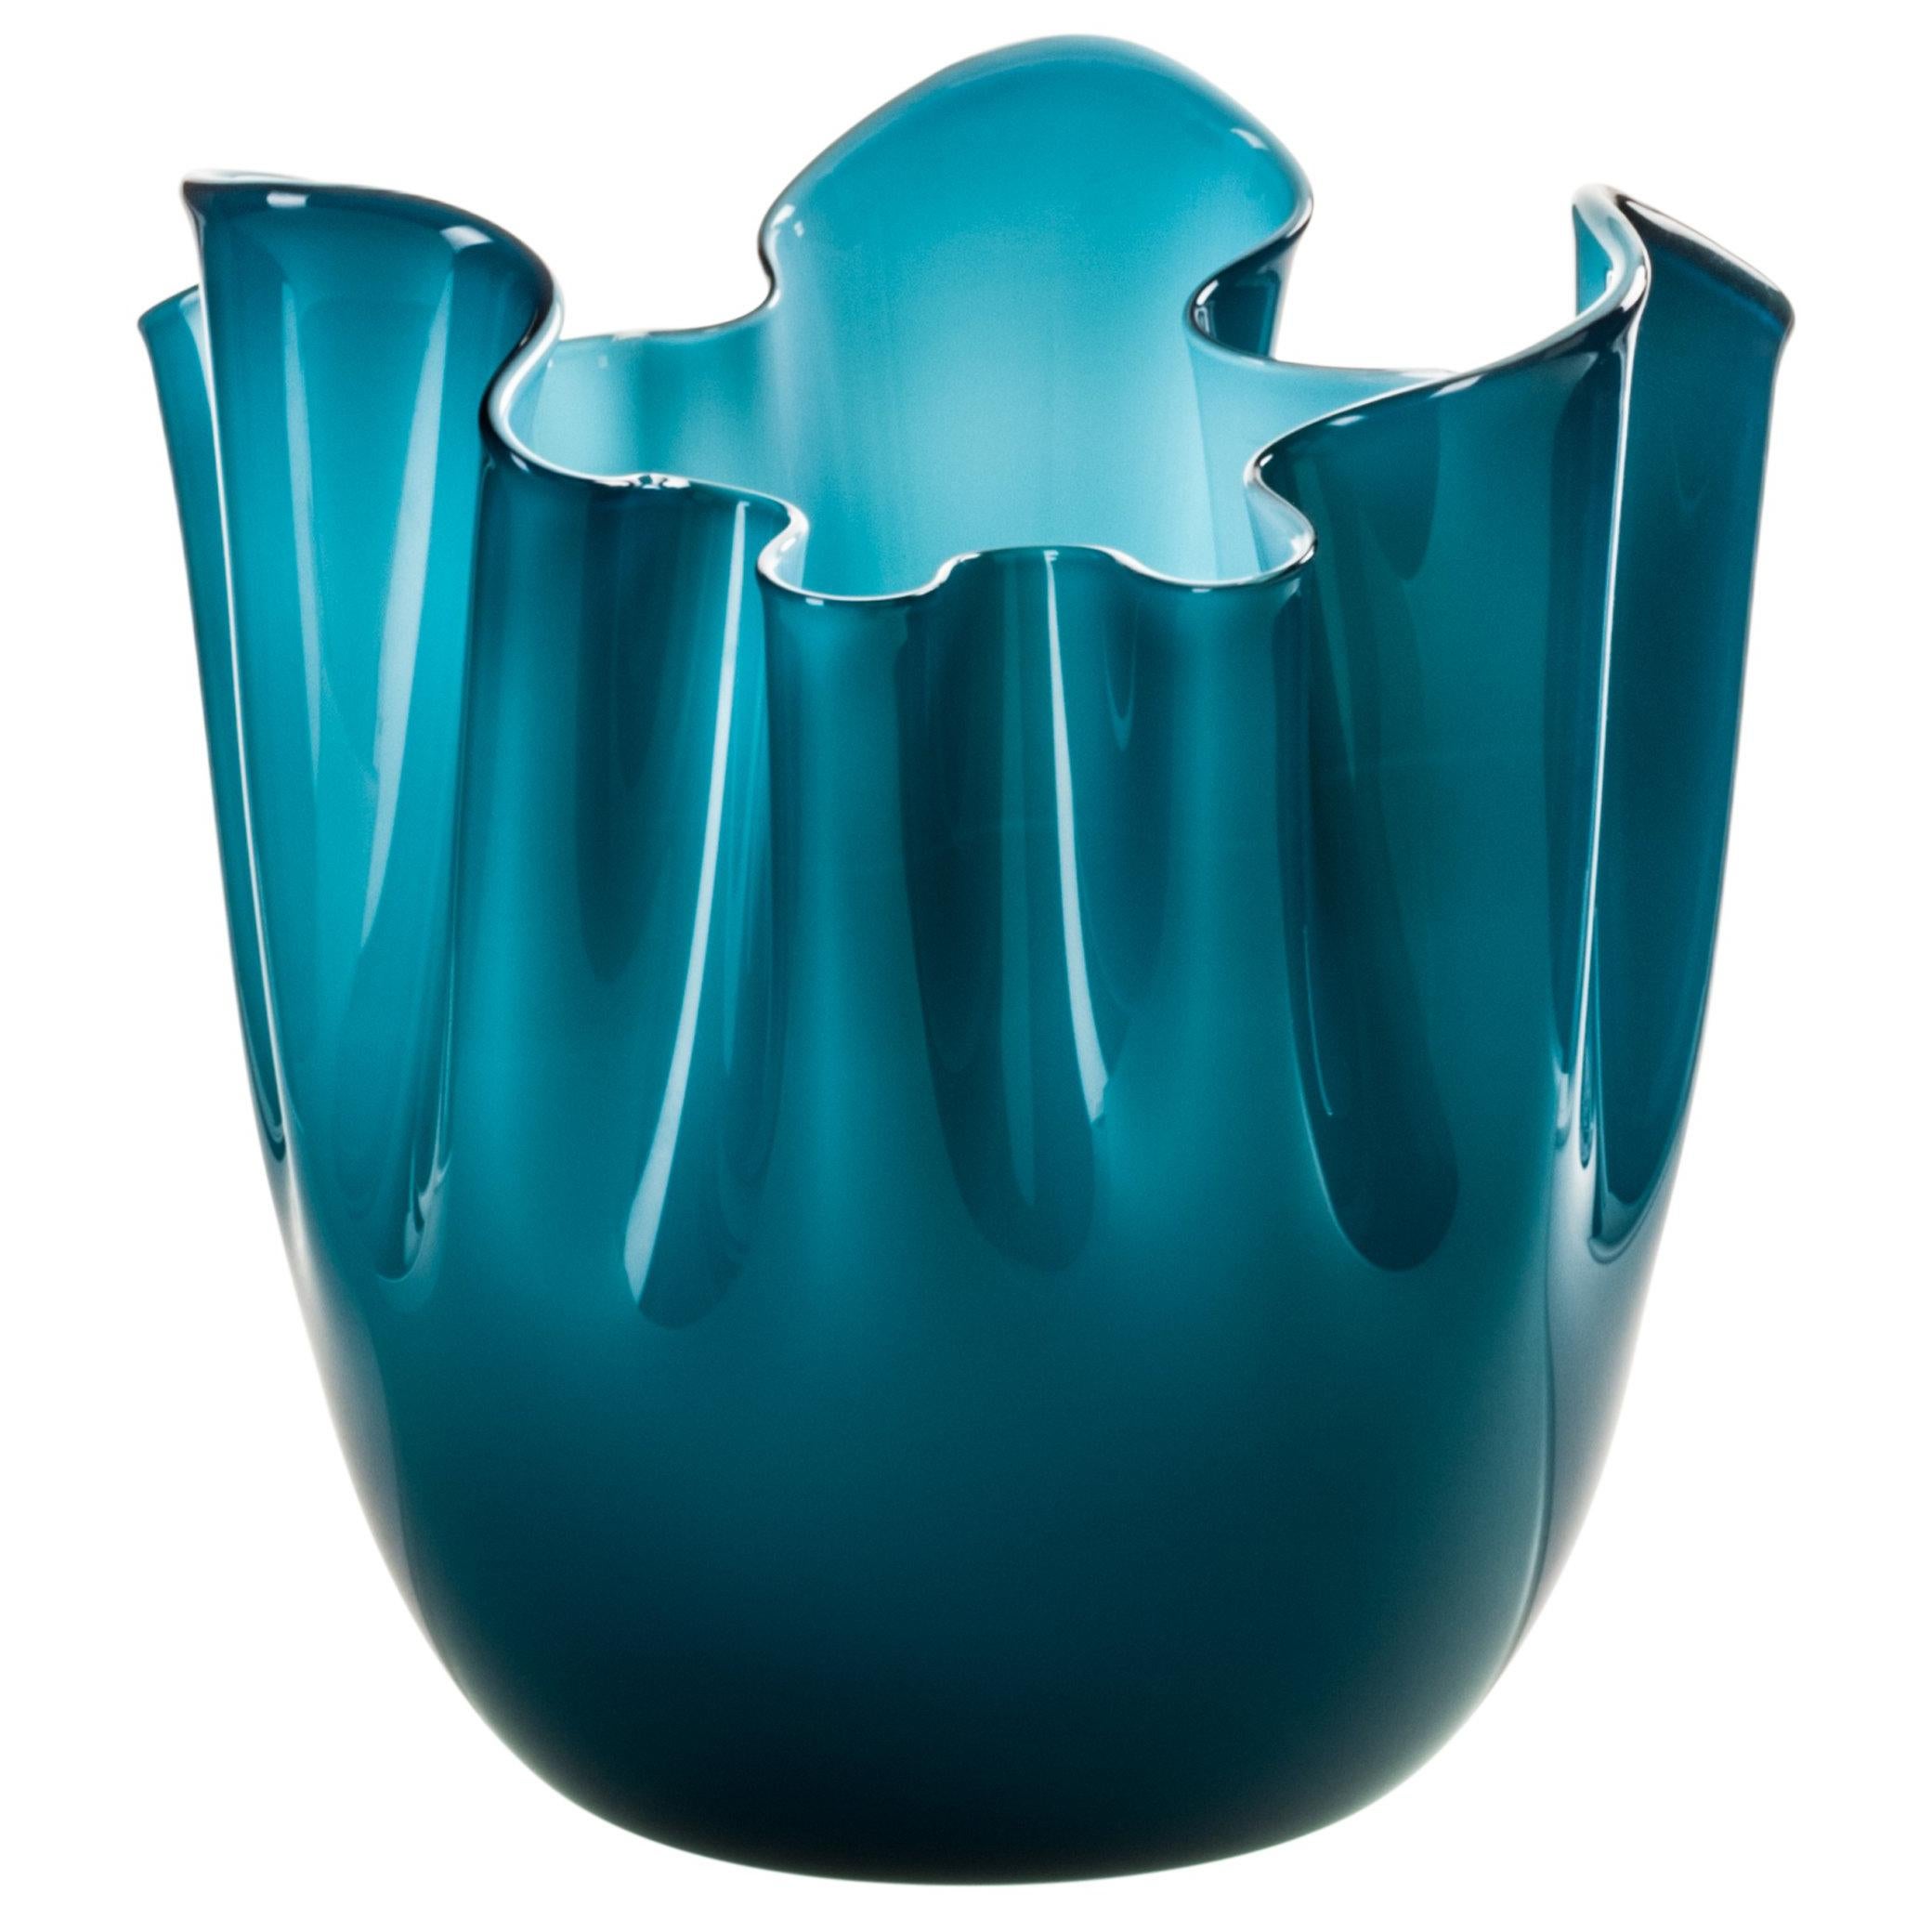 Fazzoletto Glass Vase in Aquamarine by Fulvio Bianconi & Paolo Venini